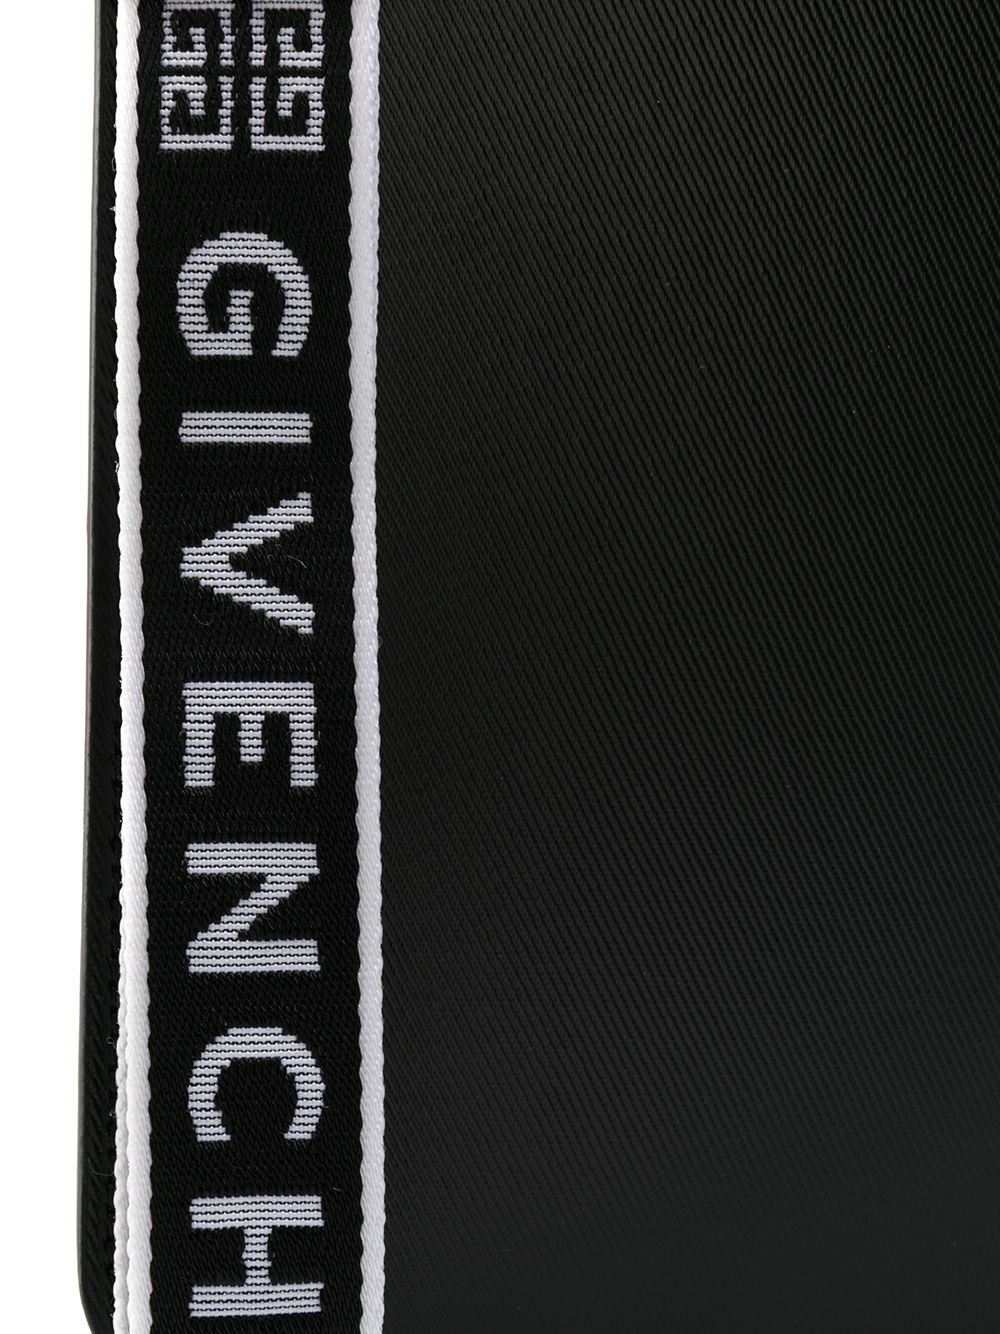 фото Givenchy клатч среднего размера